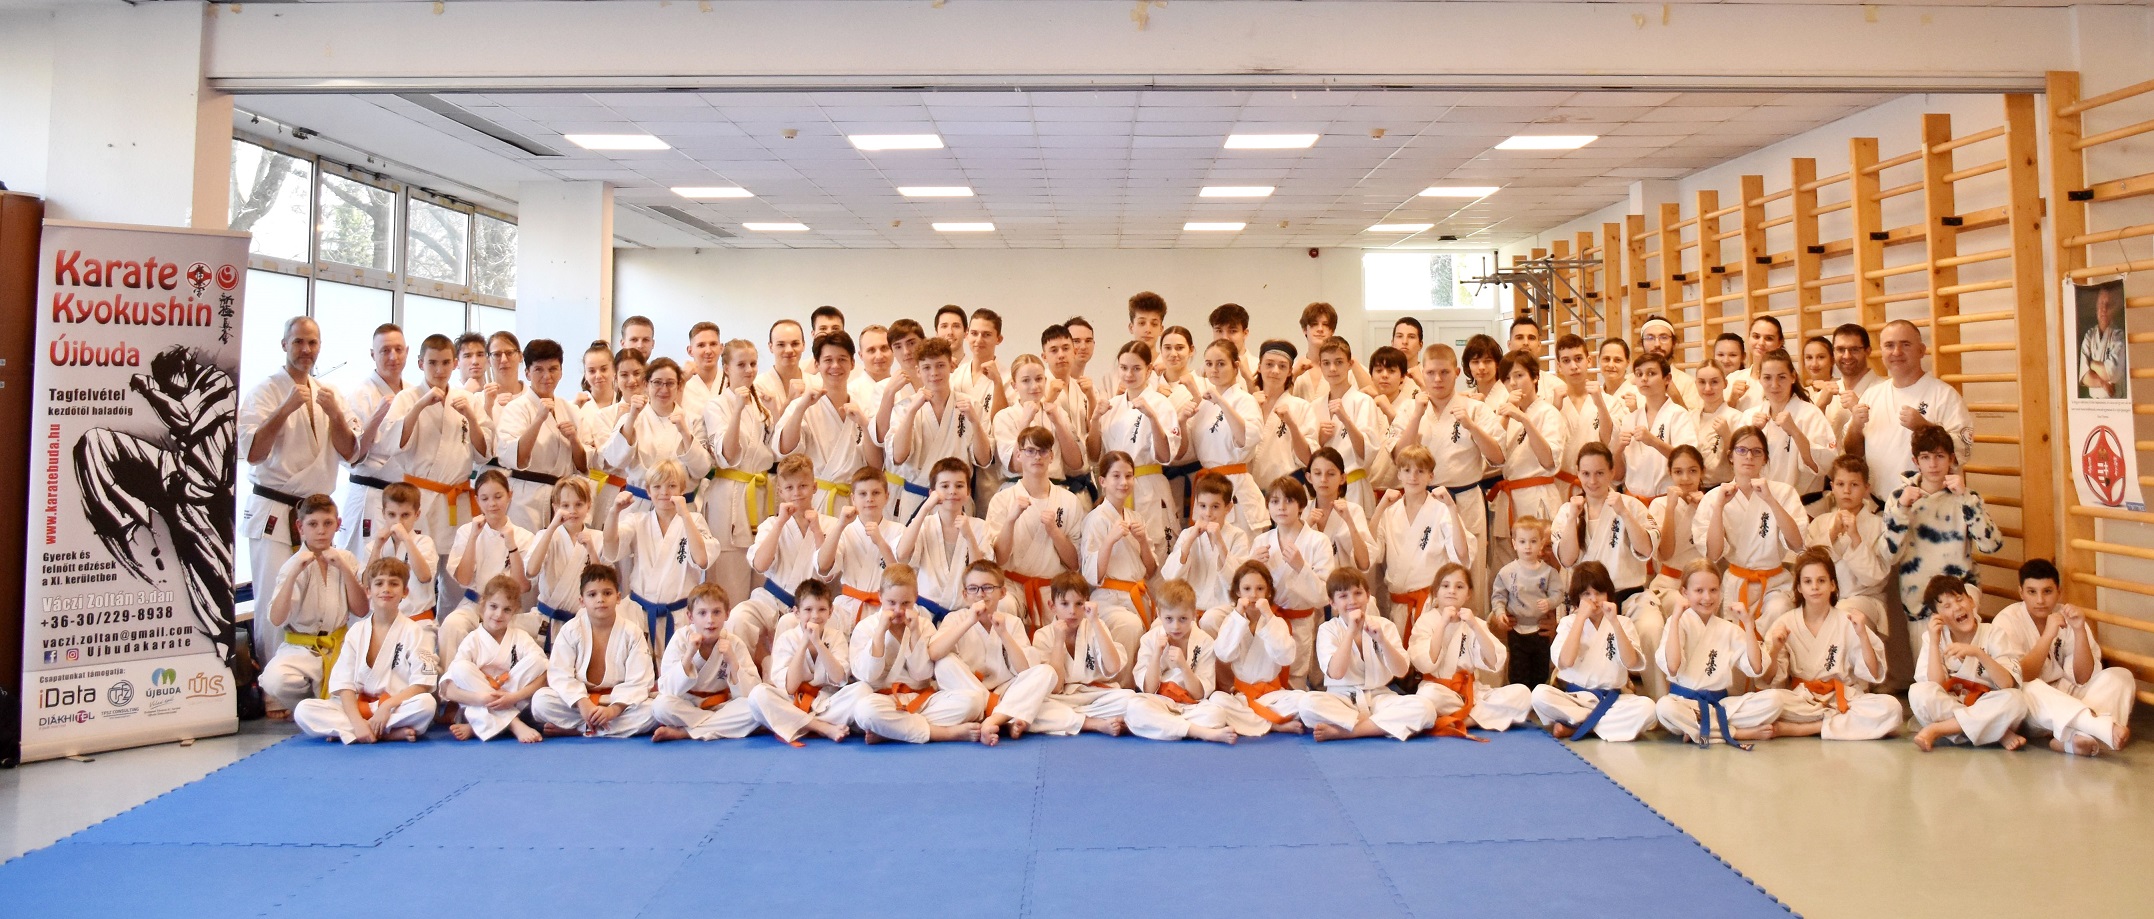 Az Újbudai Kyokushin Karate Klub meghívására Budapesten jártunk